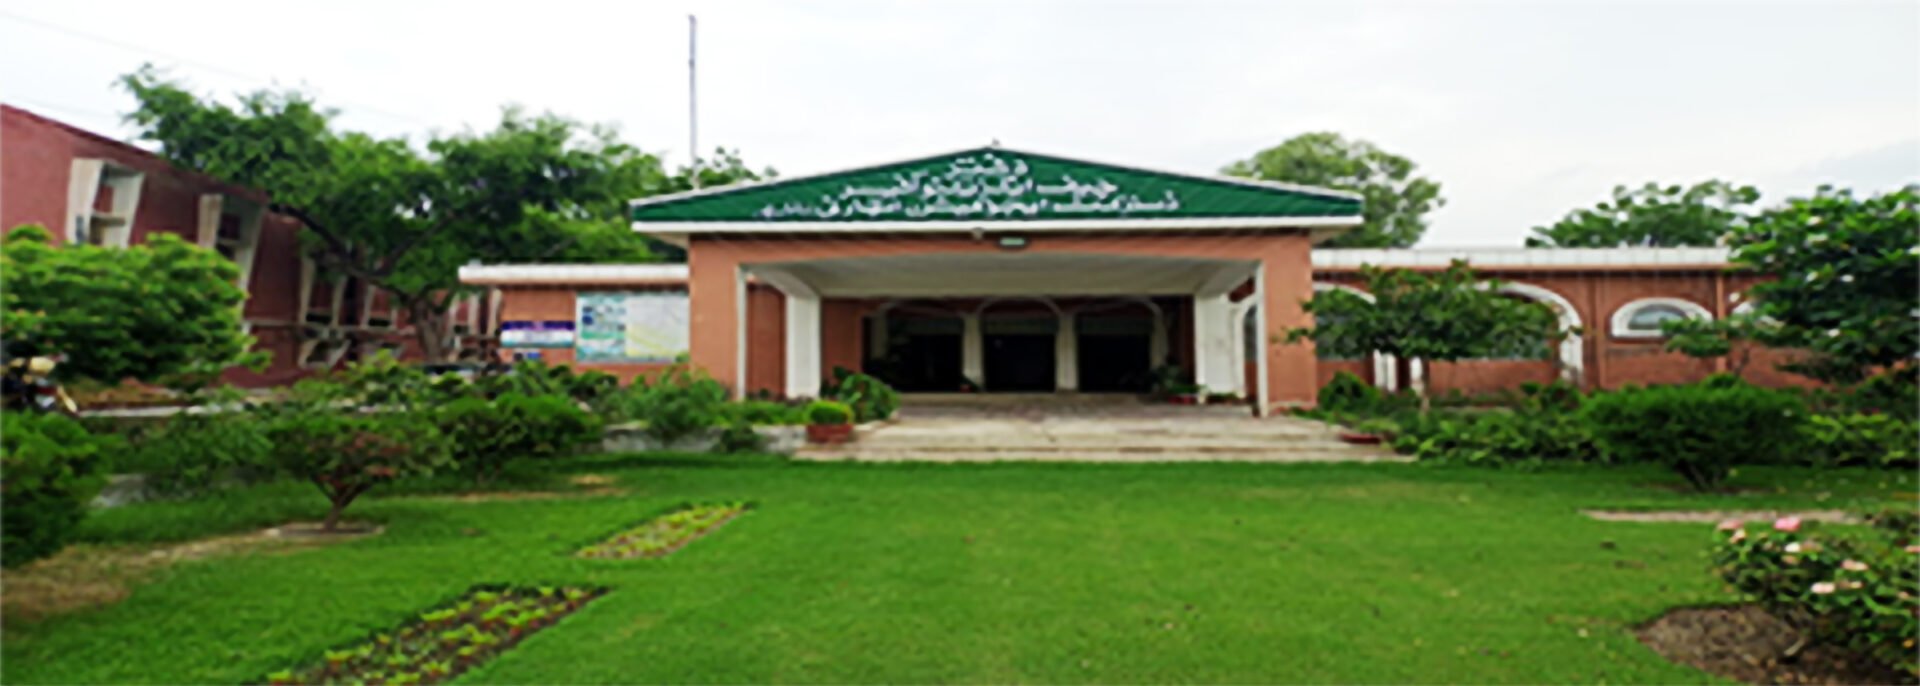 CEO-Office-Building-Bahawalpur